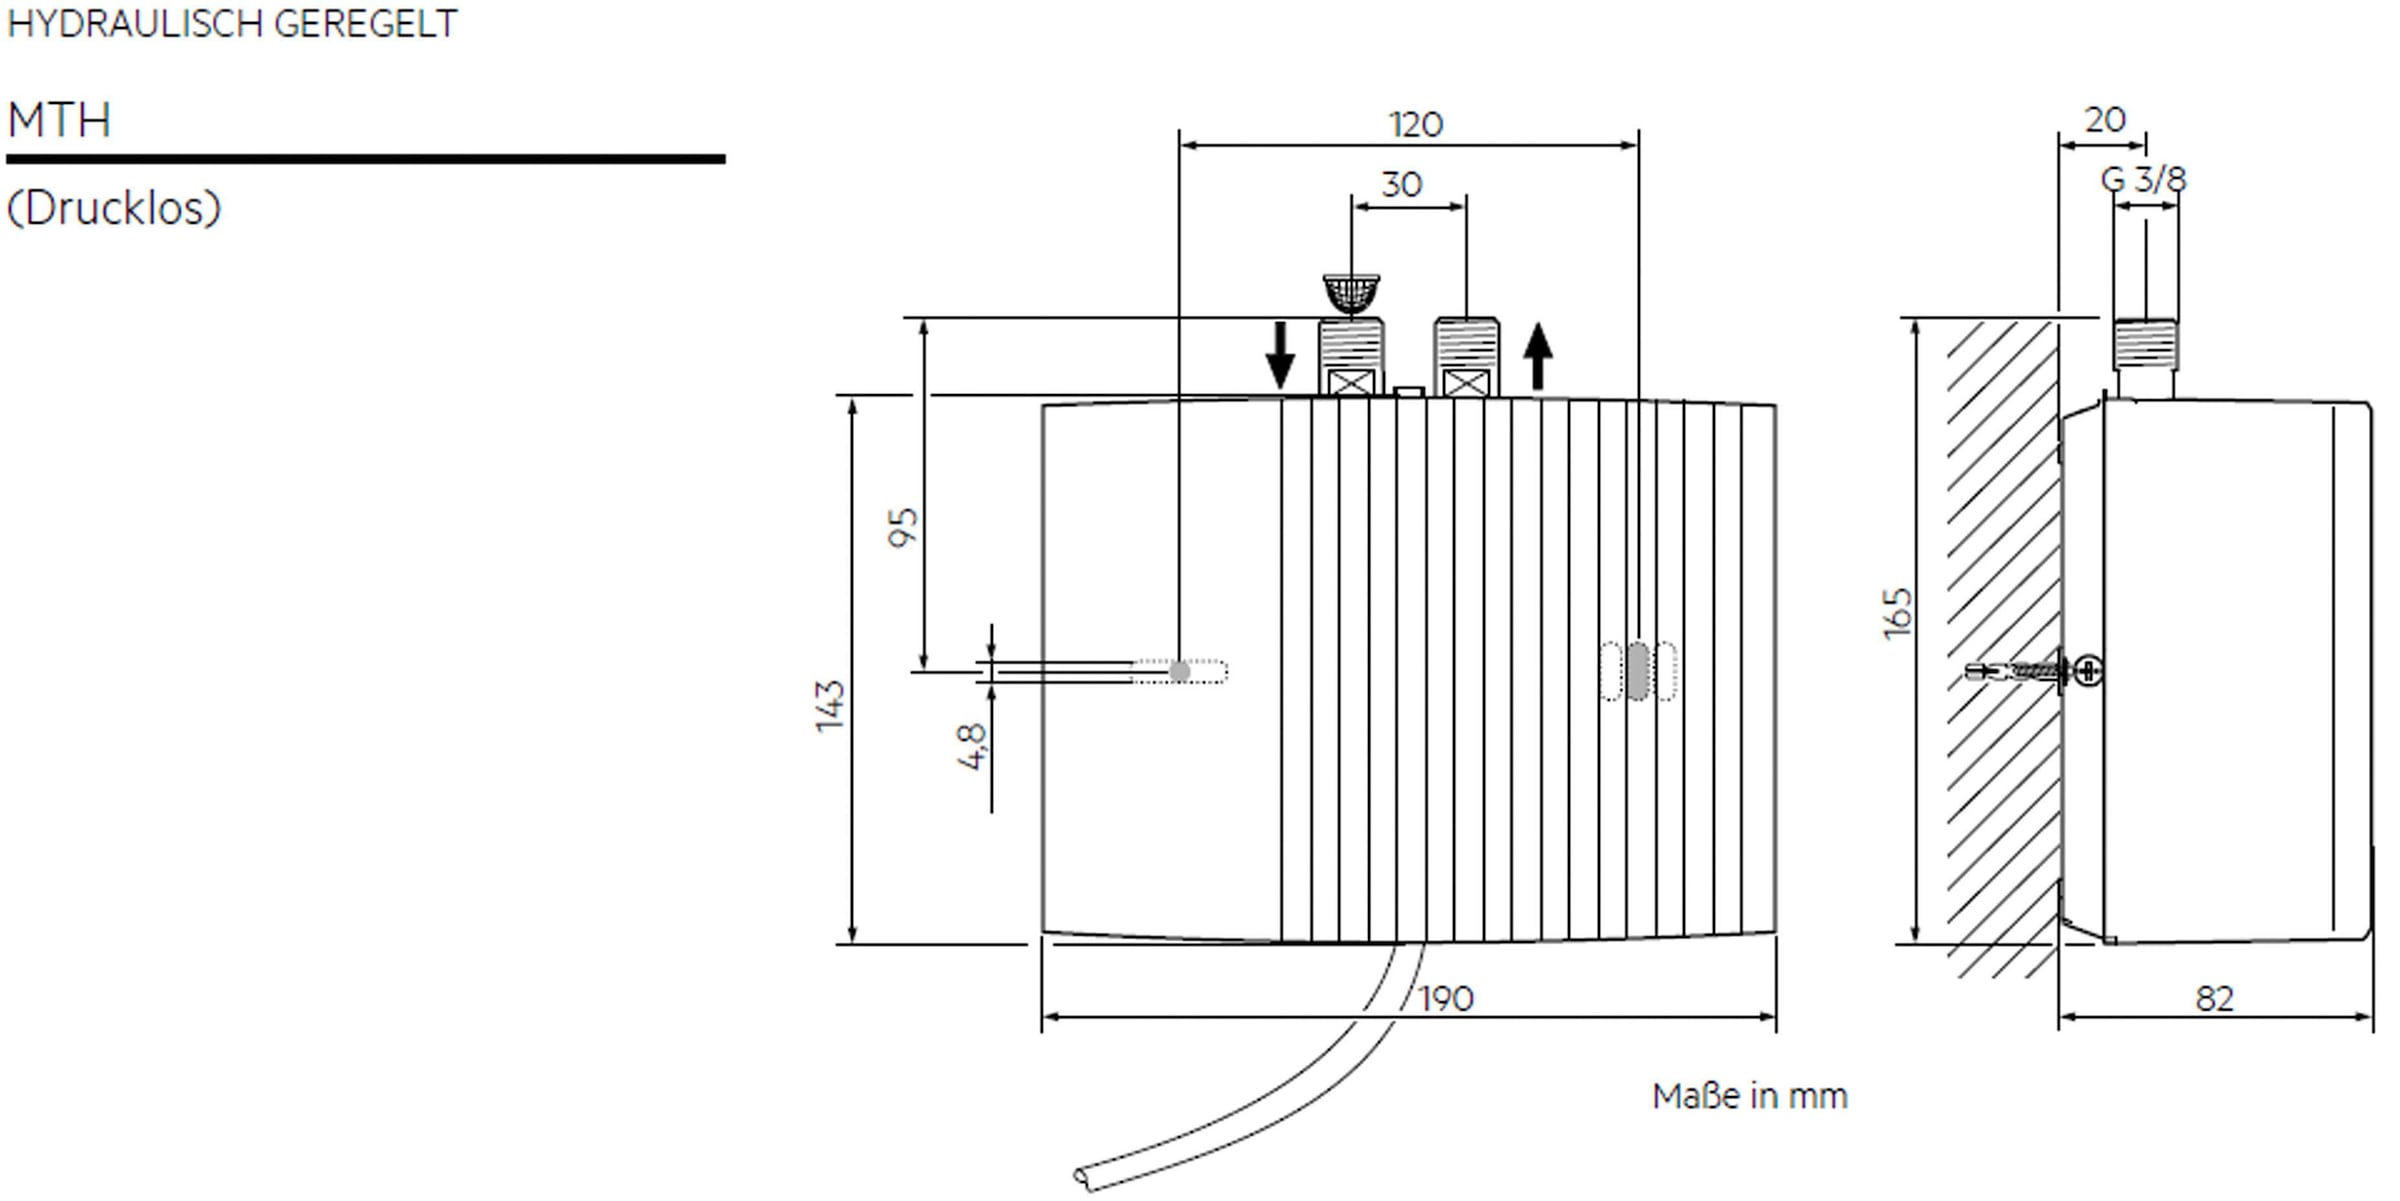 AEG-Haustechnik Klein-Durchlauferhitzer »MTH 350 f. Handwaschbecken, 3,5 kW, m. Stecker«, untertisch, mit Armatur